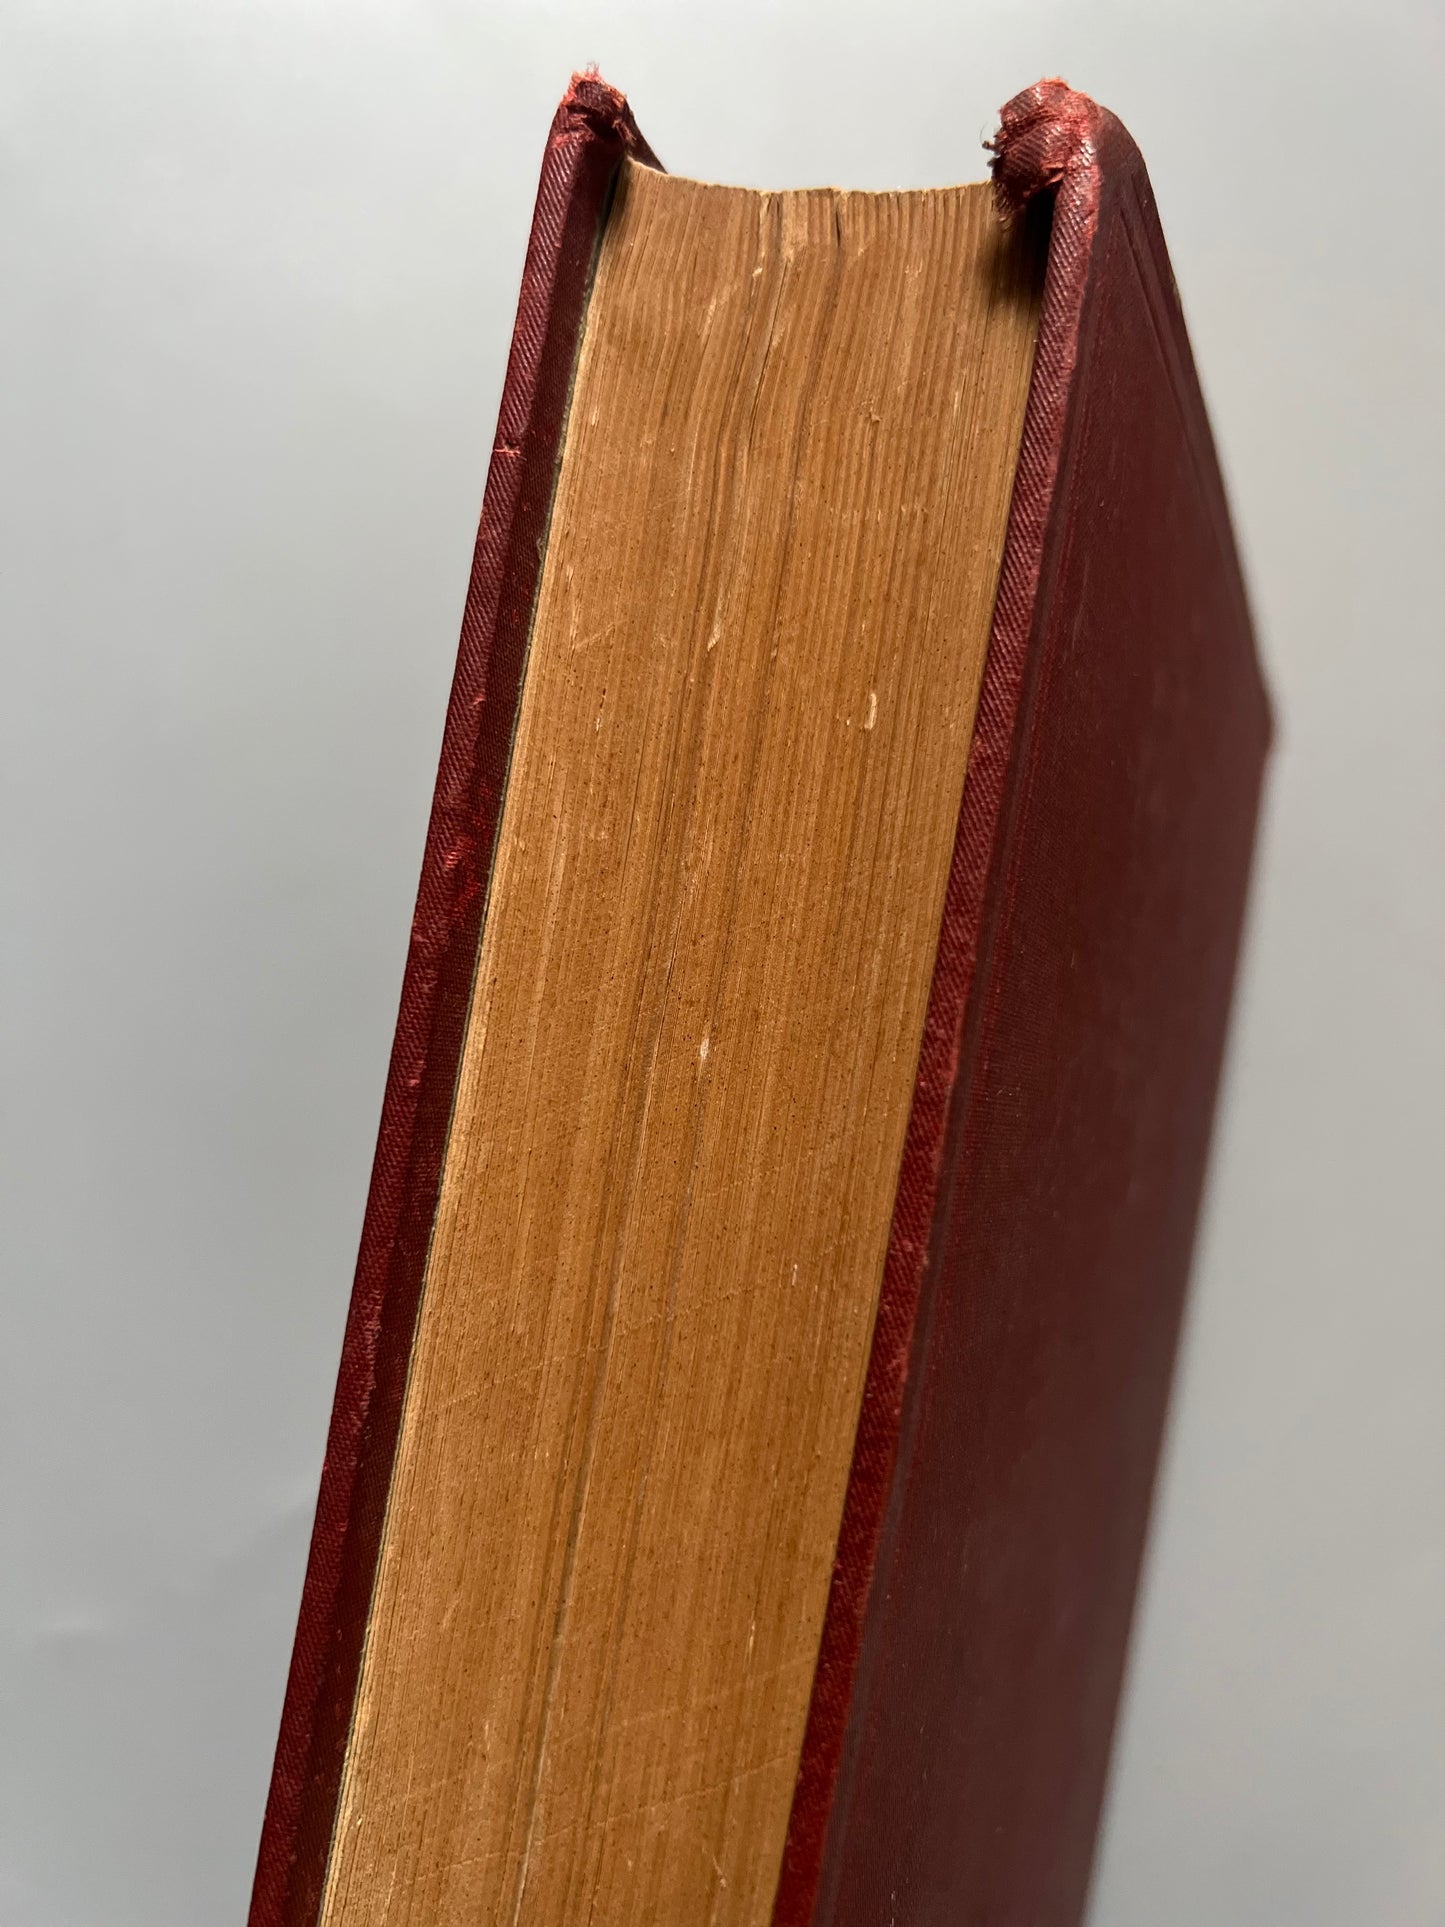 Traité patrique de charpente, E. Barberot - Libraire polythechnique Ch. Béranger éditeur, 1911